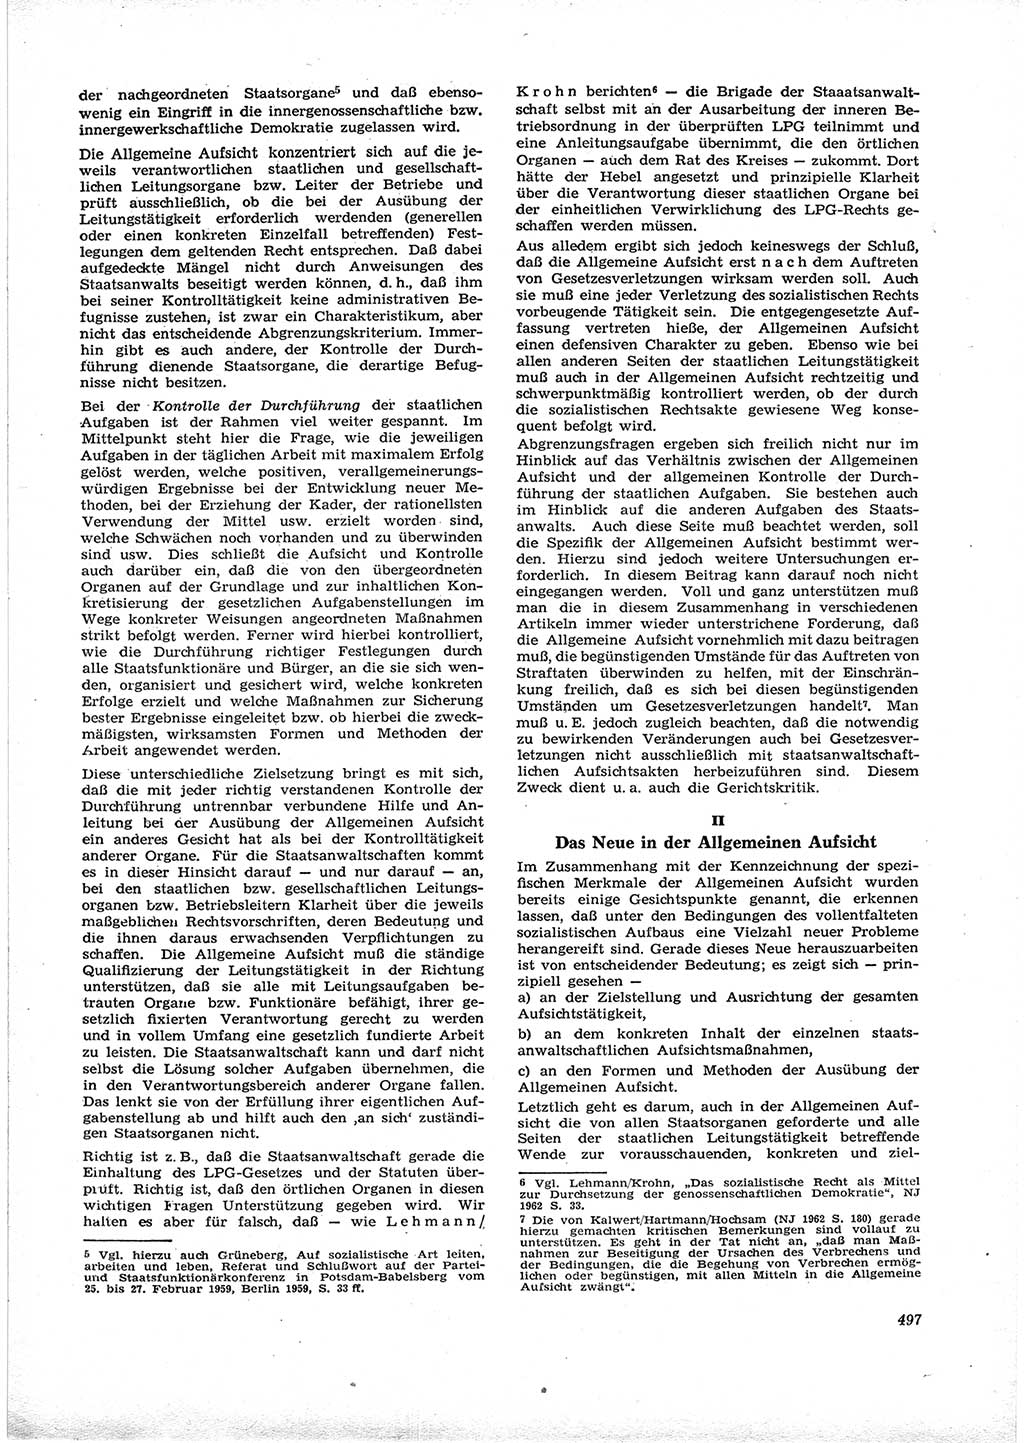 Neue Justiz (NJ), Zeitschrift für Recht und Rechtswissenschaft [Deutsche Demokratische Republik (DDR)], 16. Jahrgang 1962, Seite 497 (NJ DDR 1962, S. 497)